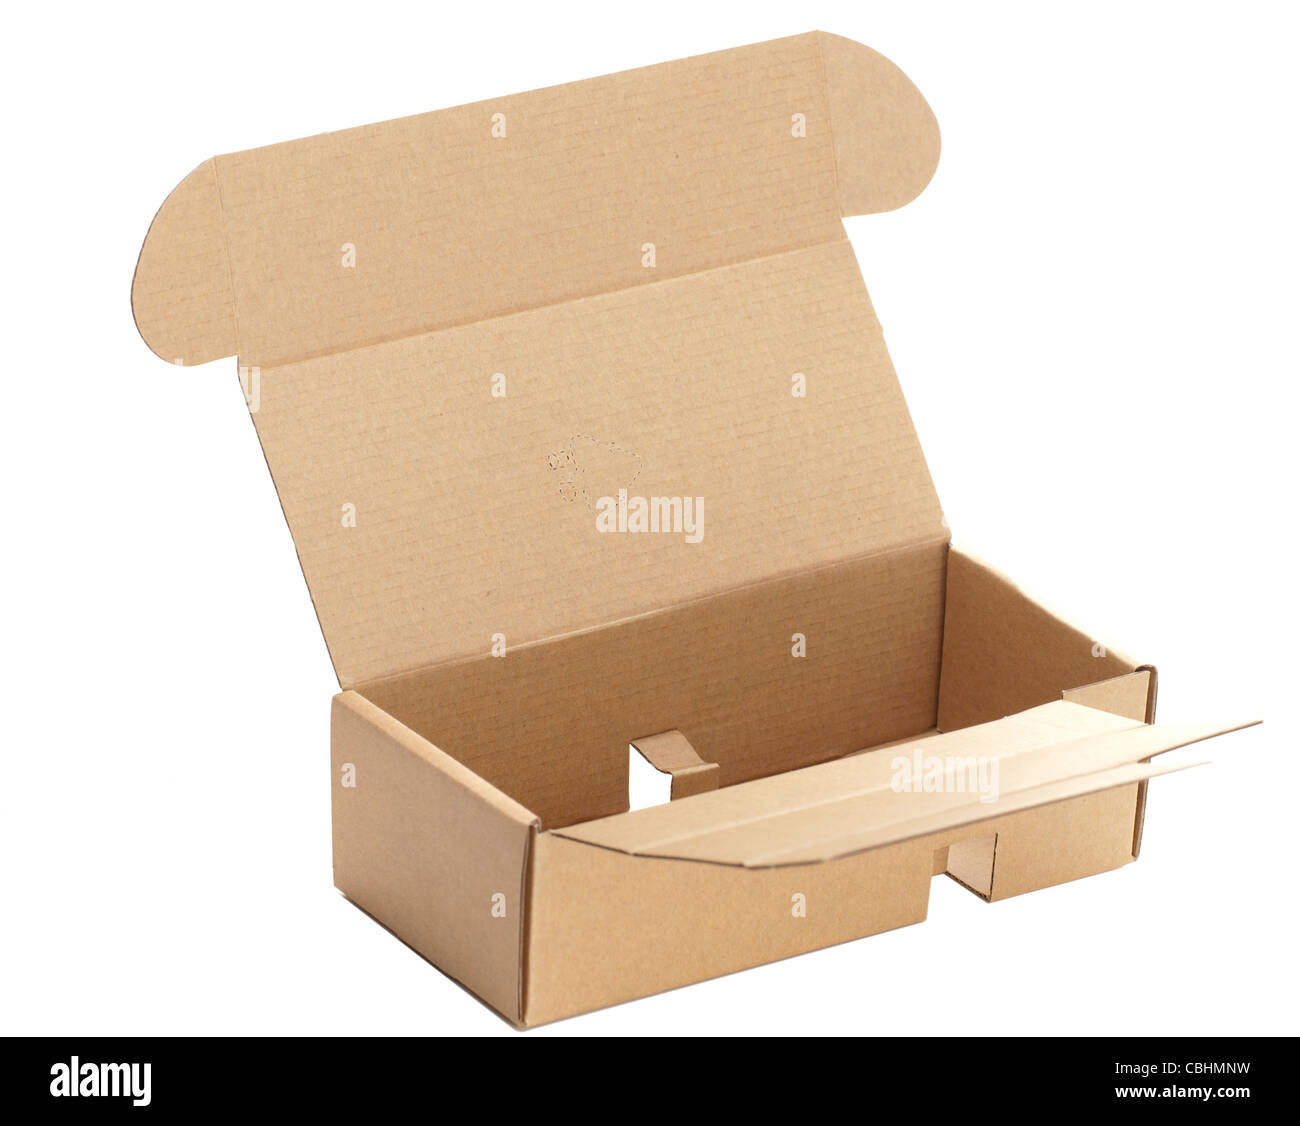 Petite boîte en carton d'emballage des composants Banque D'Images